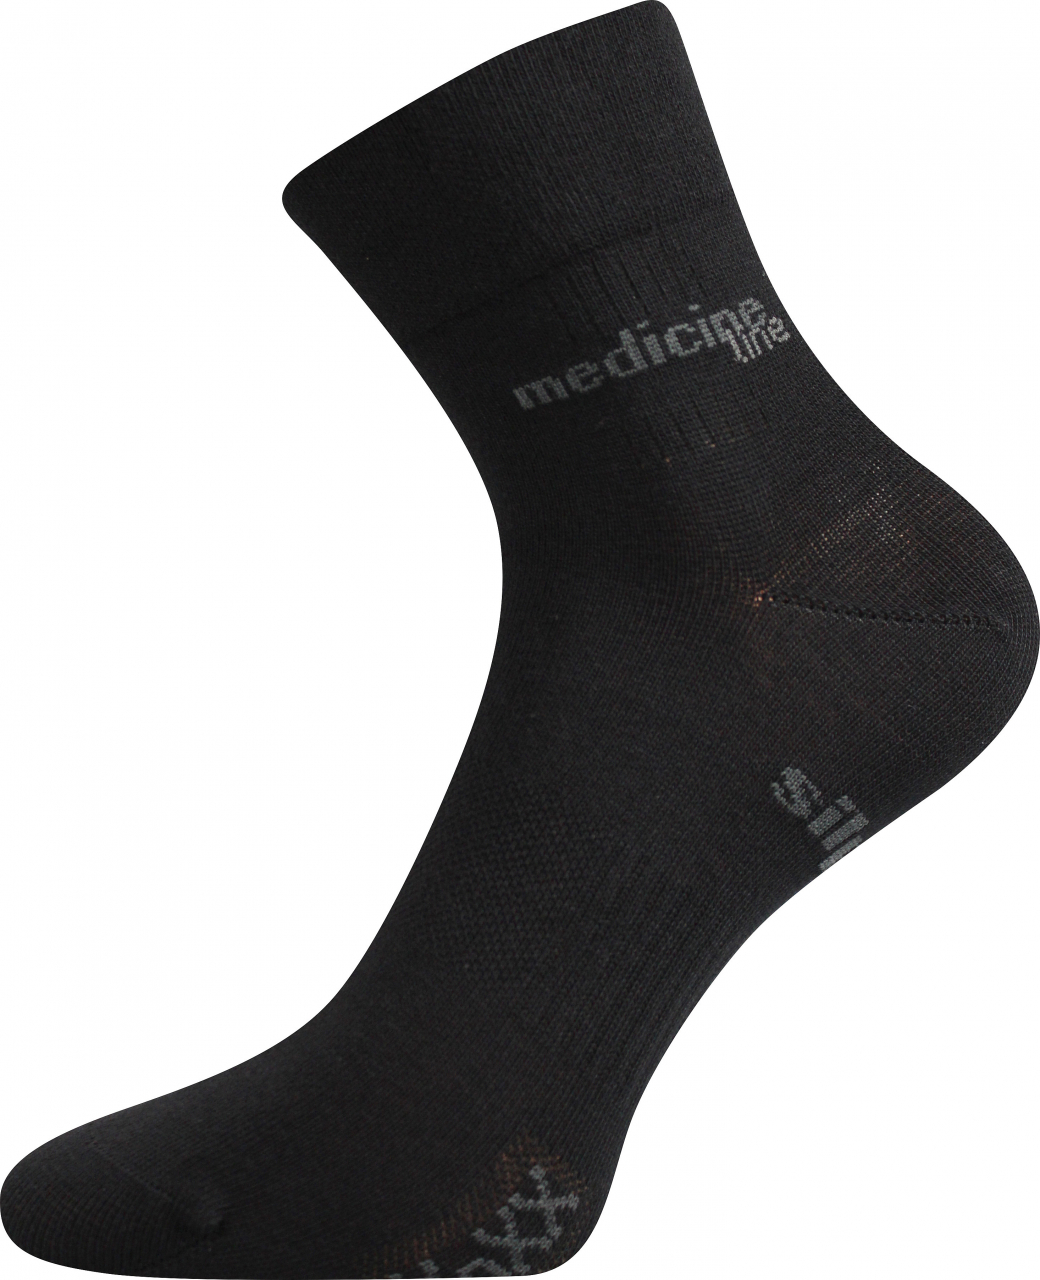 Ponožky zdravotní Mission Medicine - černé, 43-46